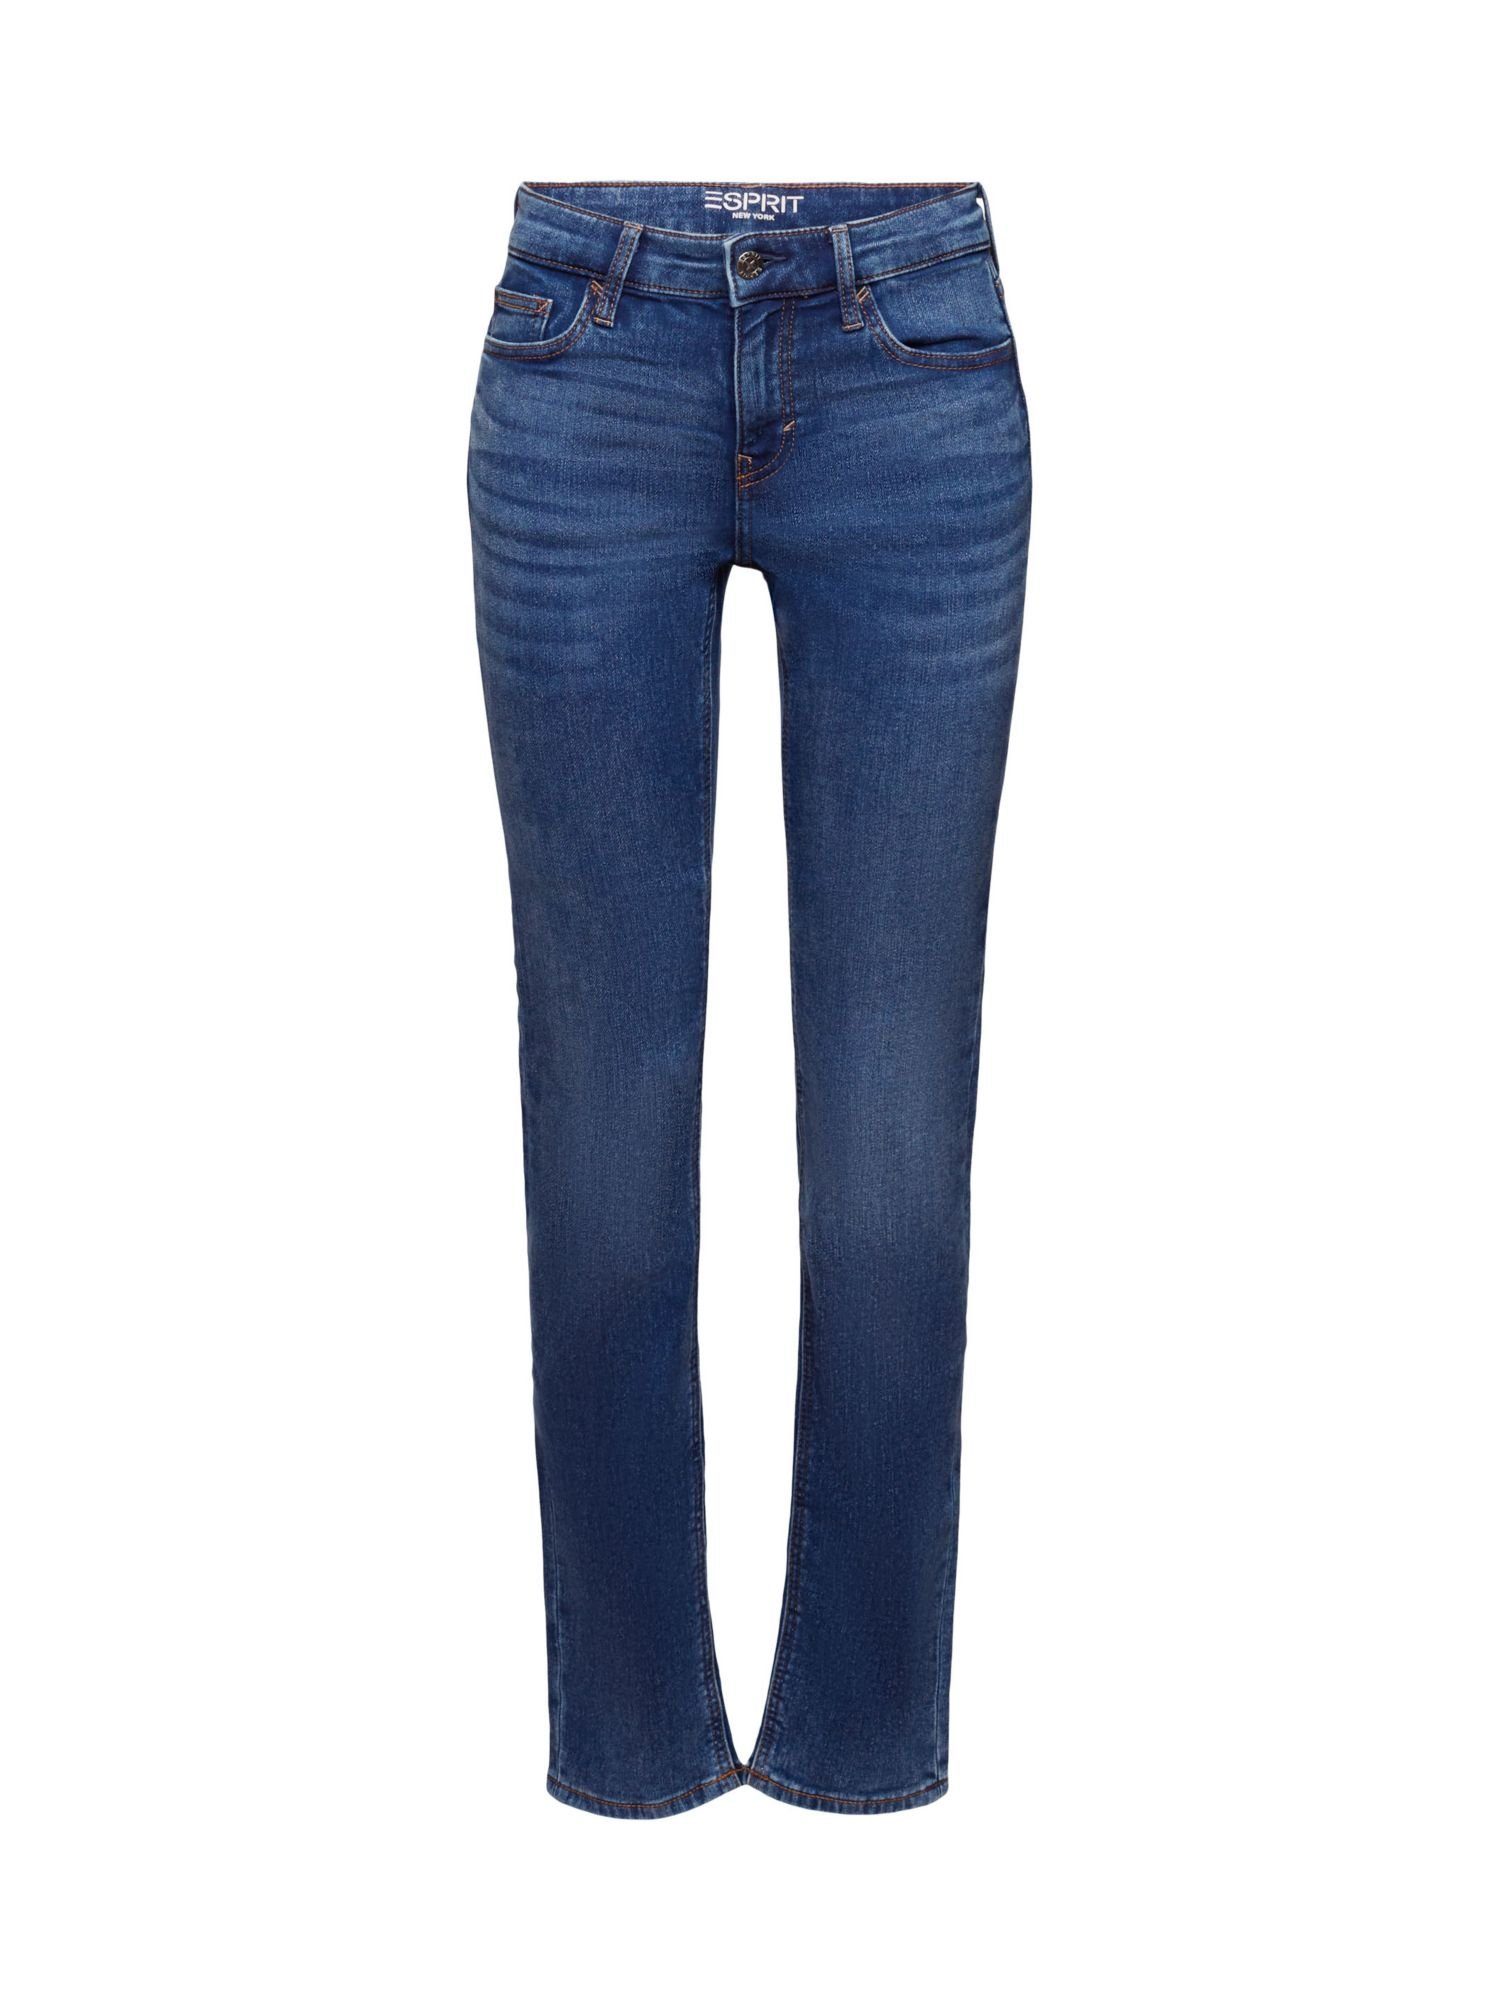 Esprit Slim-fit-Jeans Slim Fit Stretchjeans BLUE LIGHT WASHED